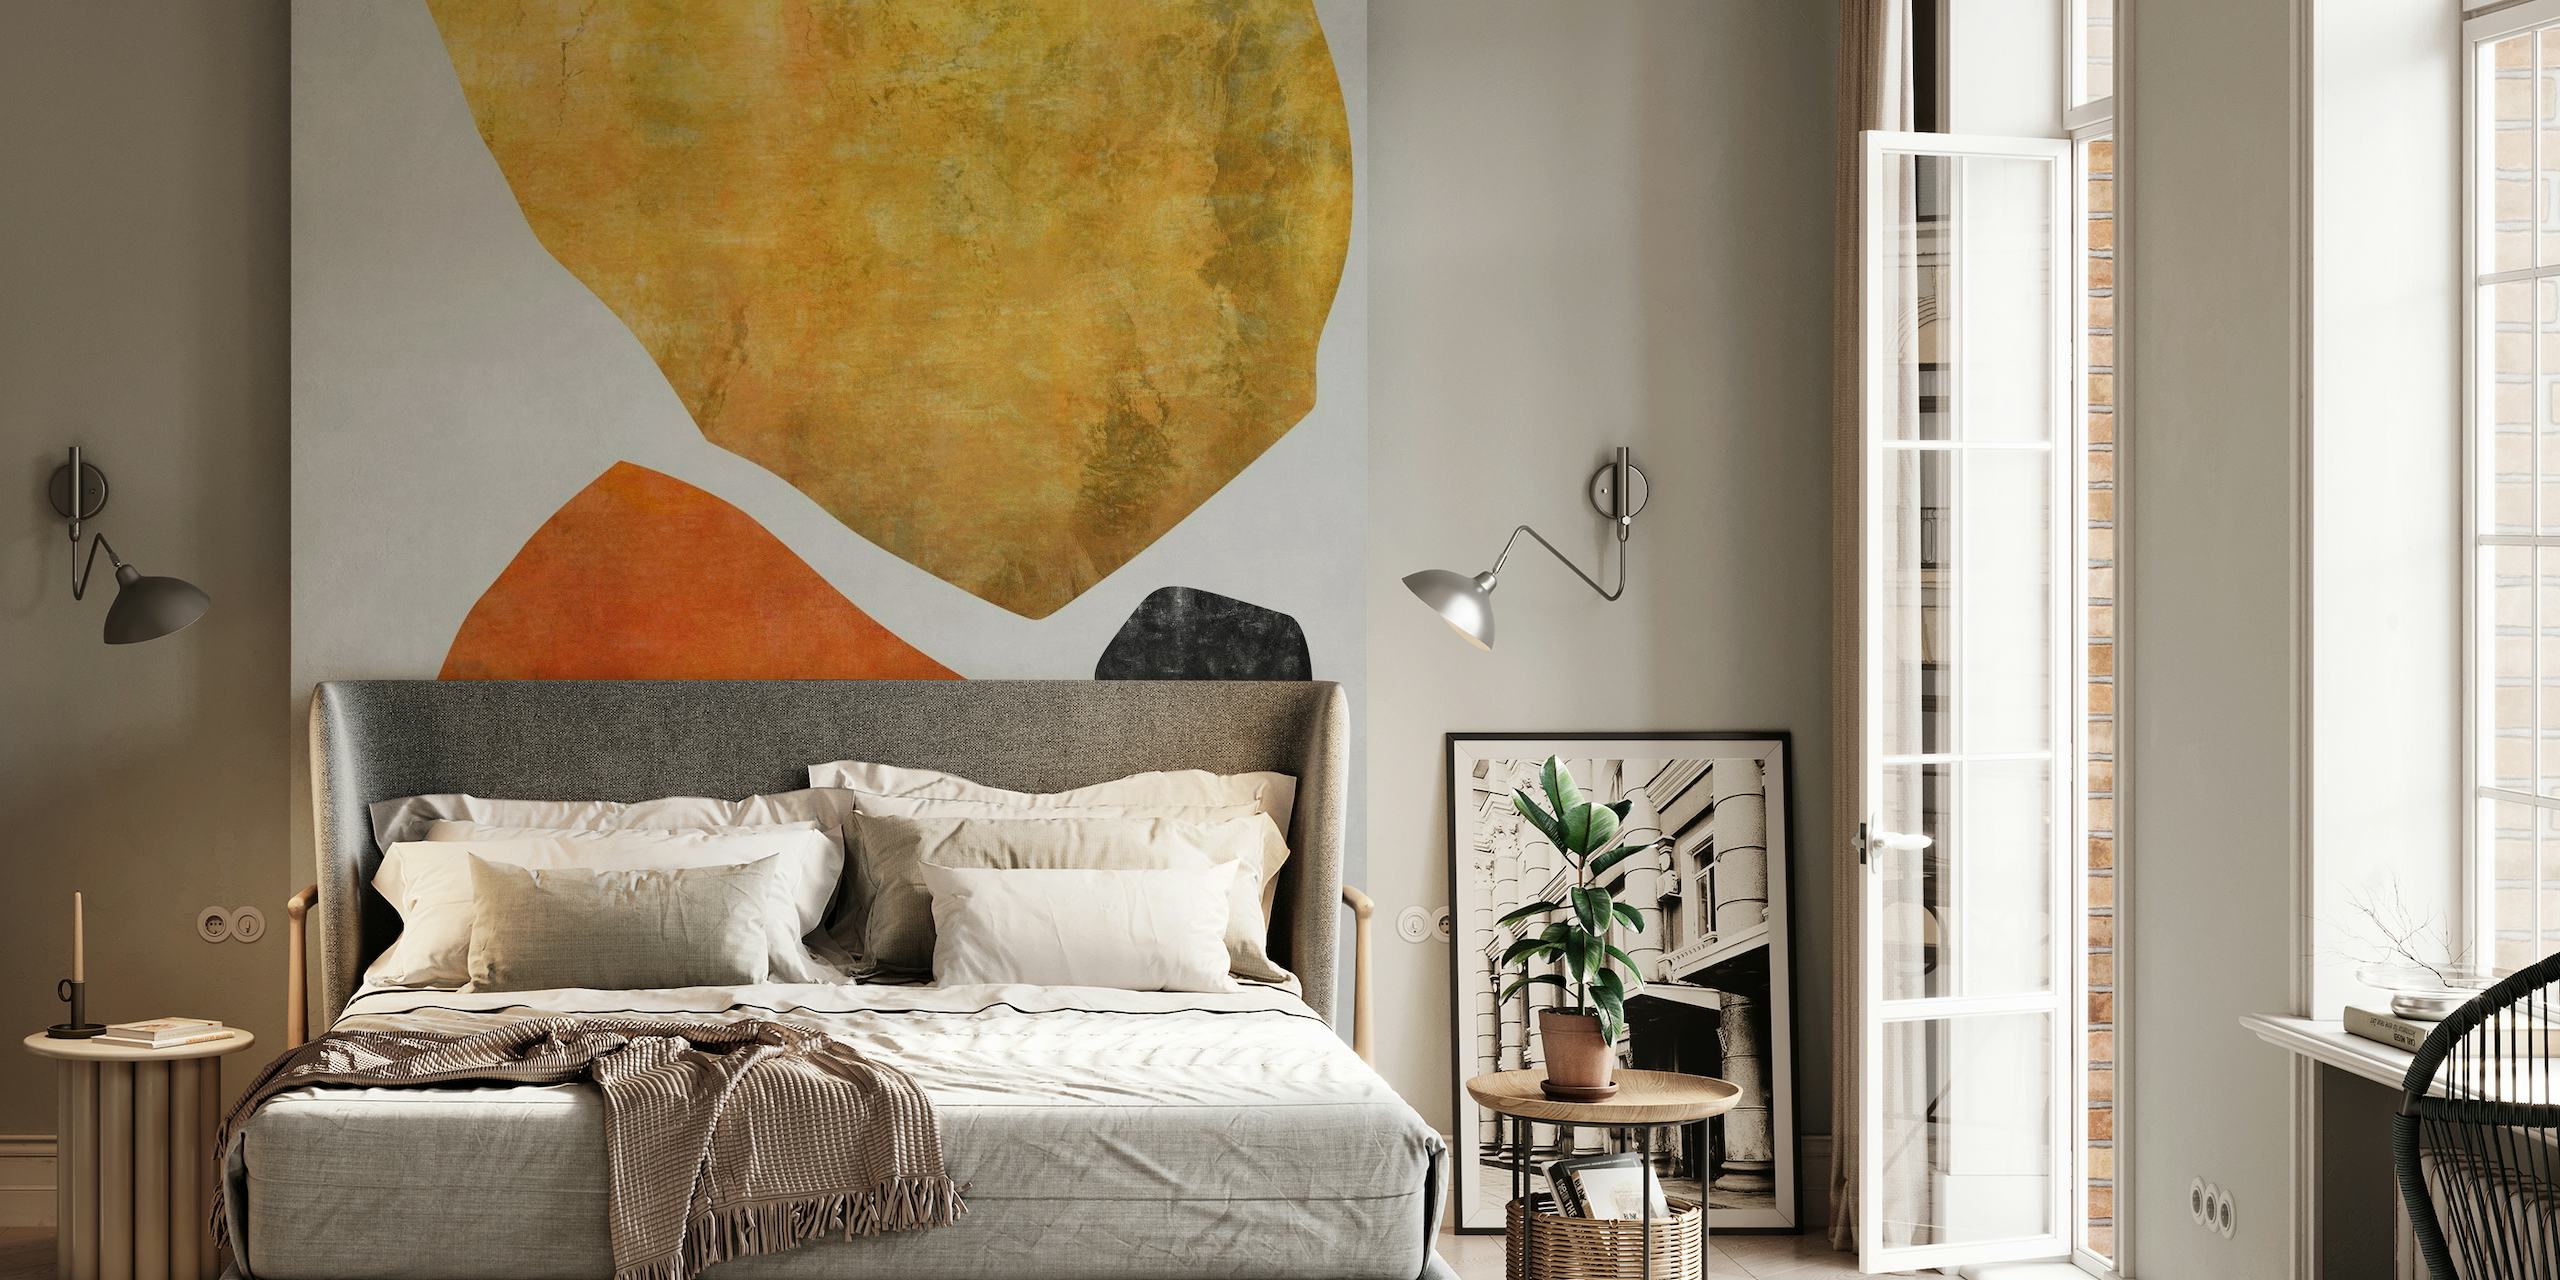 Abstrakti seinämaalaus Organic Shapes 10, jossa on maanläheisiä sävyjä ja minimalistinen muotoilu